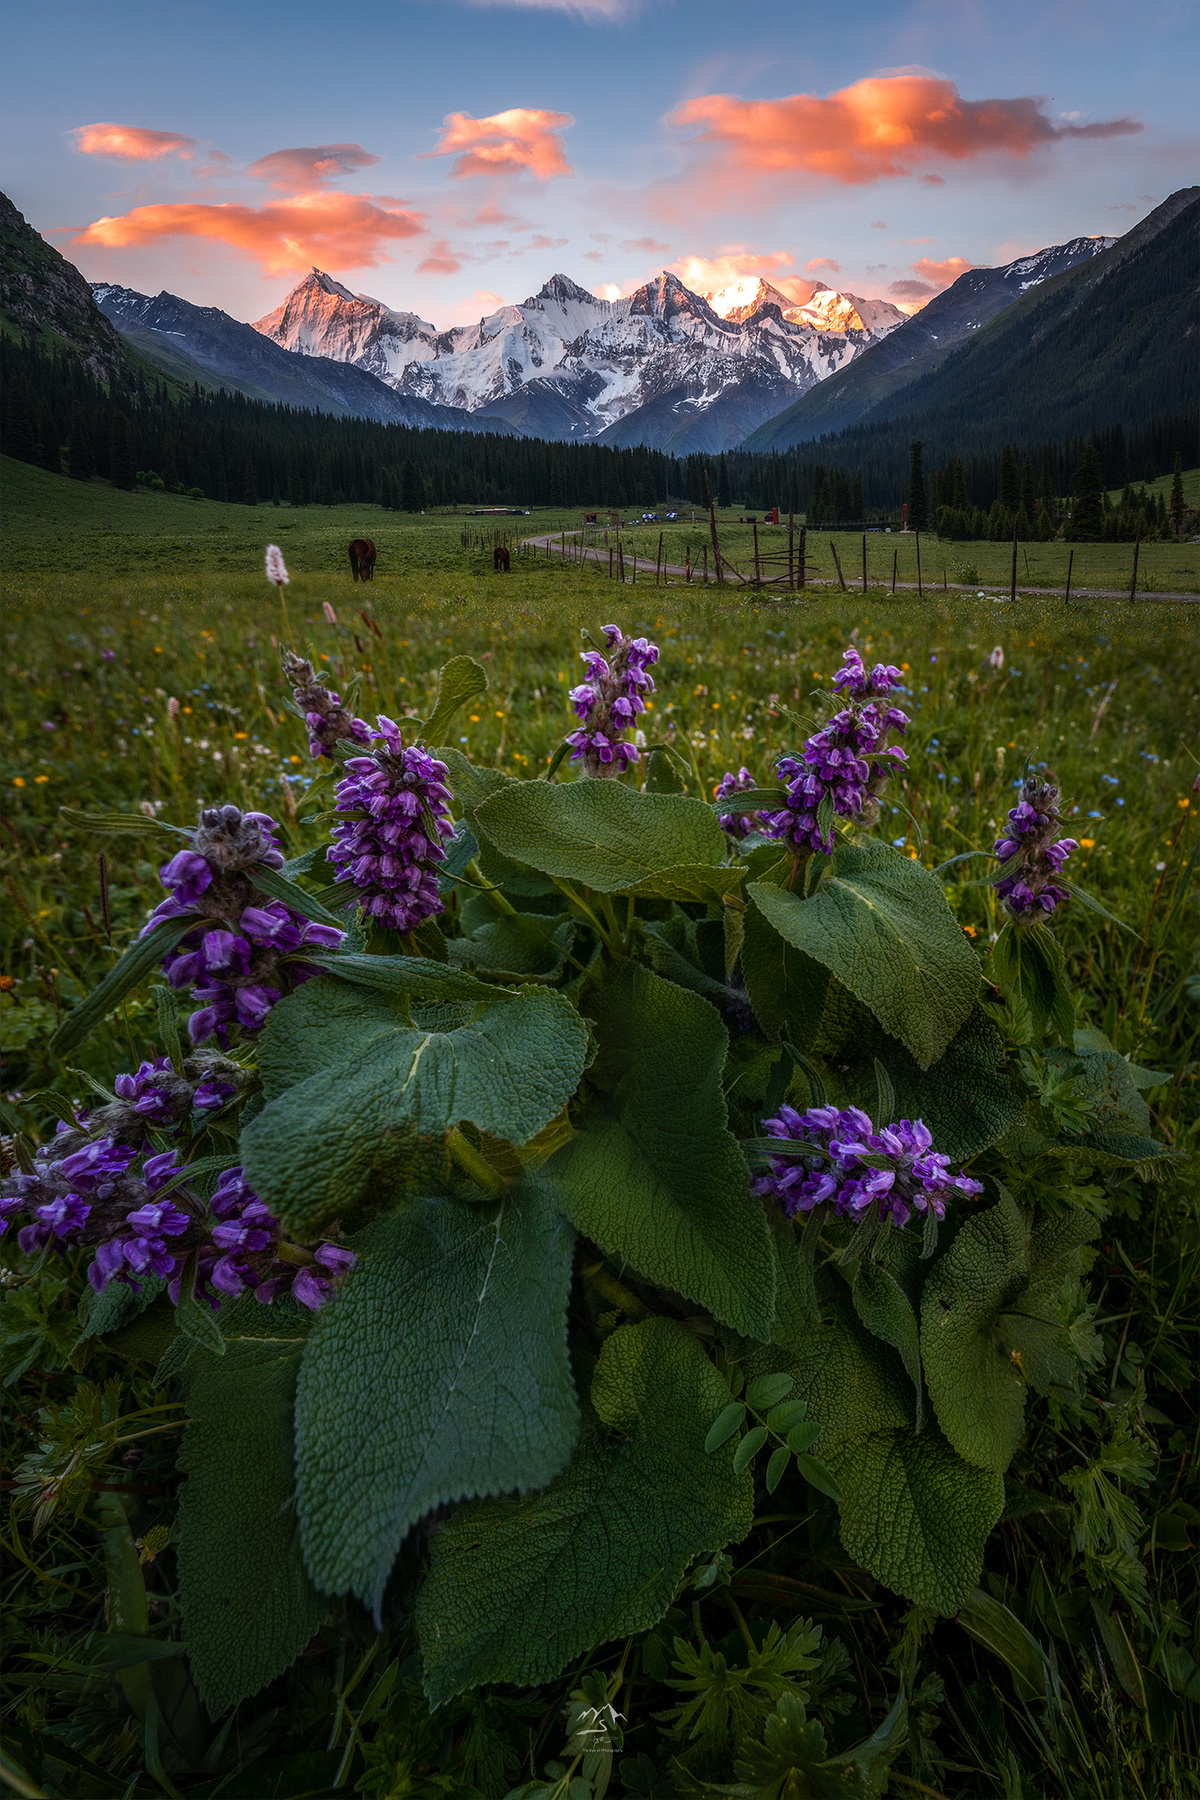 远处是山脉 前景中有一头牛在吃草 前景中有一片野生的紫色野花。